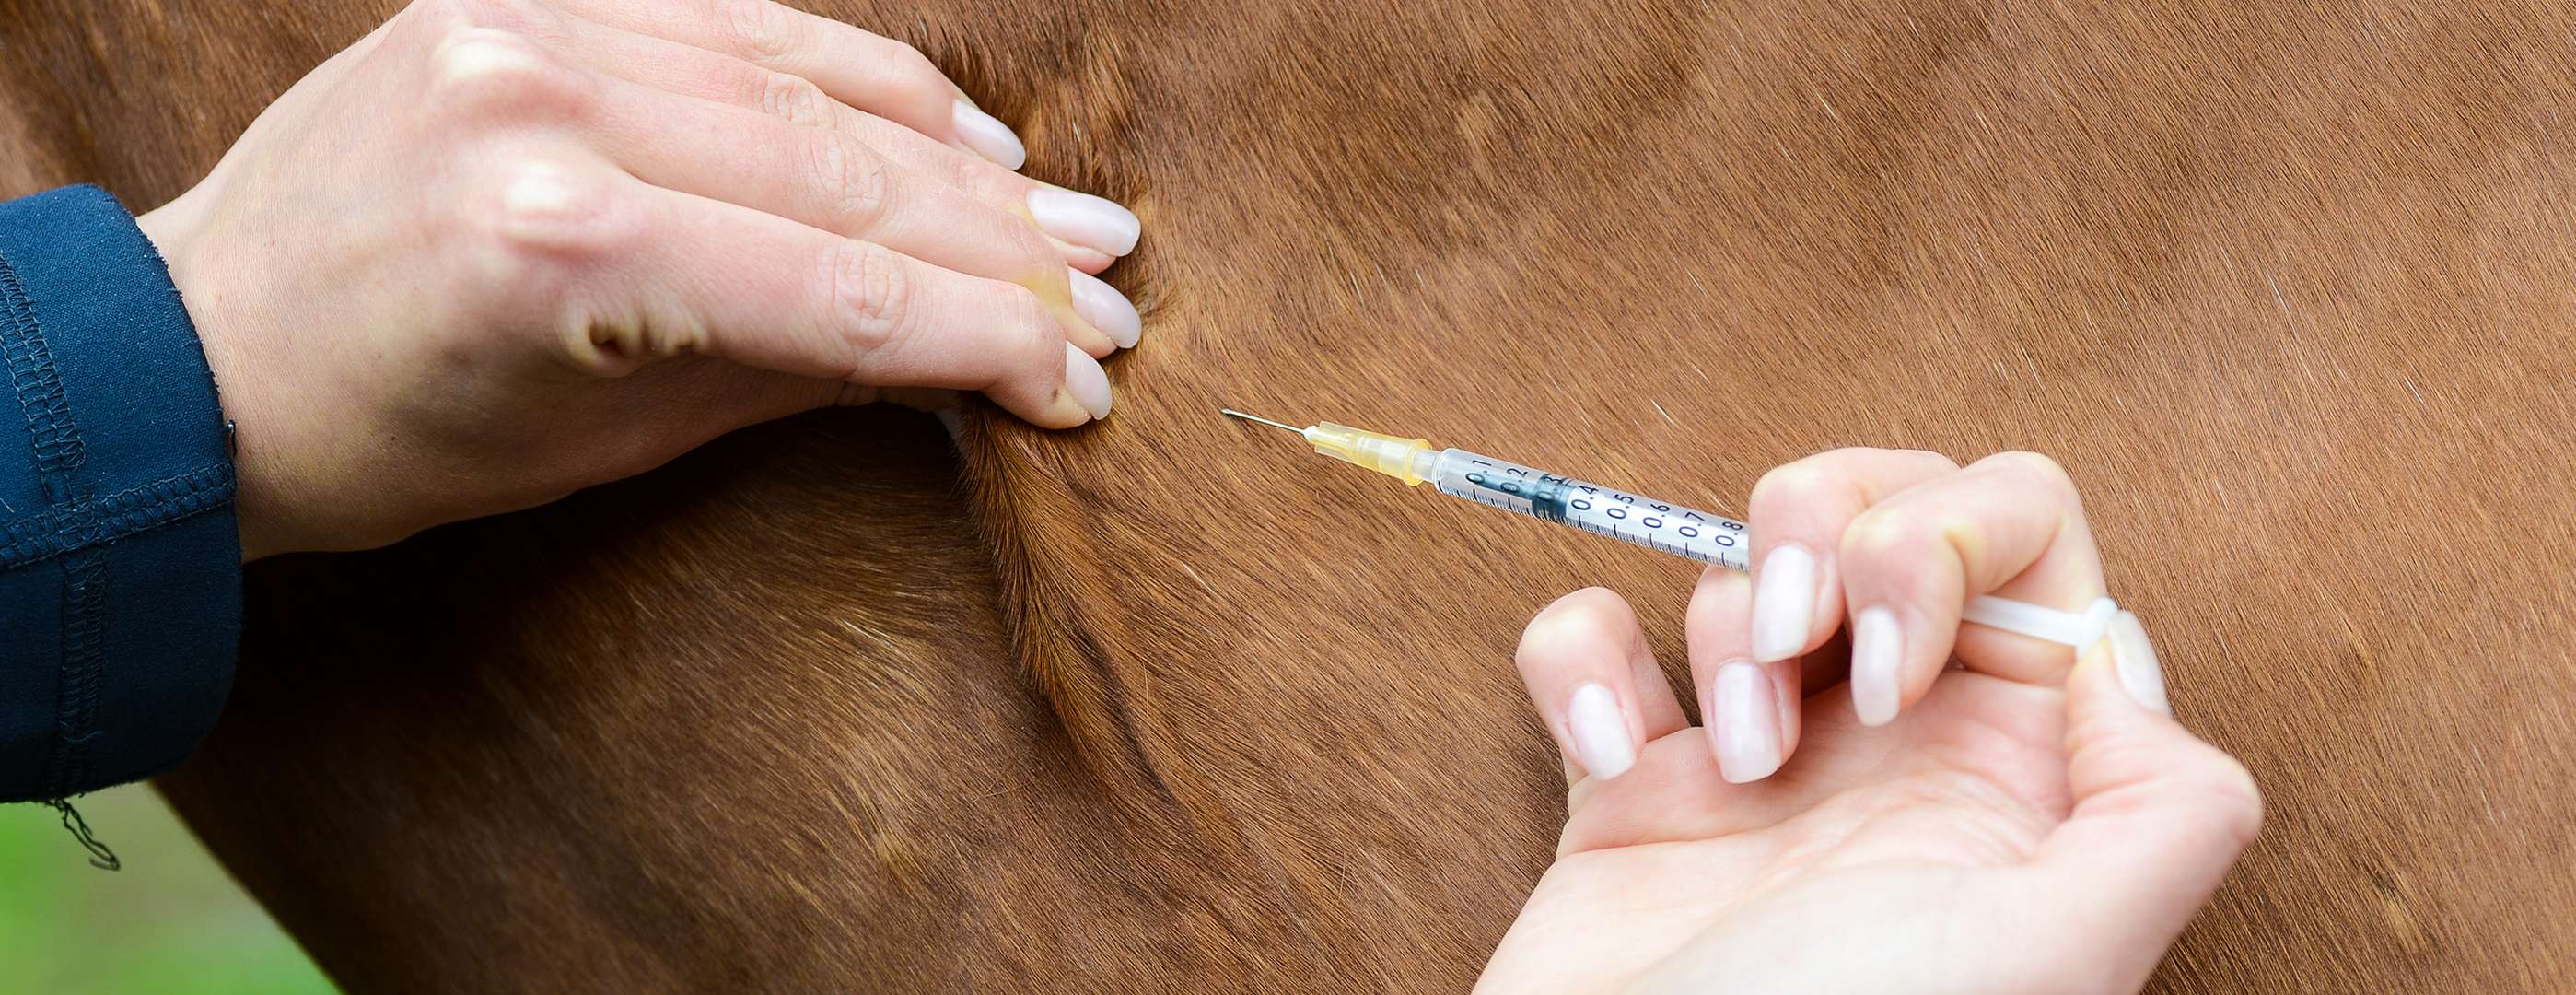 Allianz - Pferdekrankenversicherung - Impfung: Pferd wird geimpft